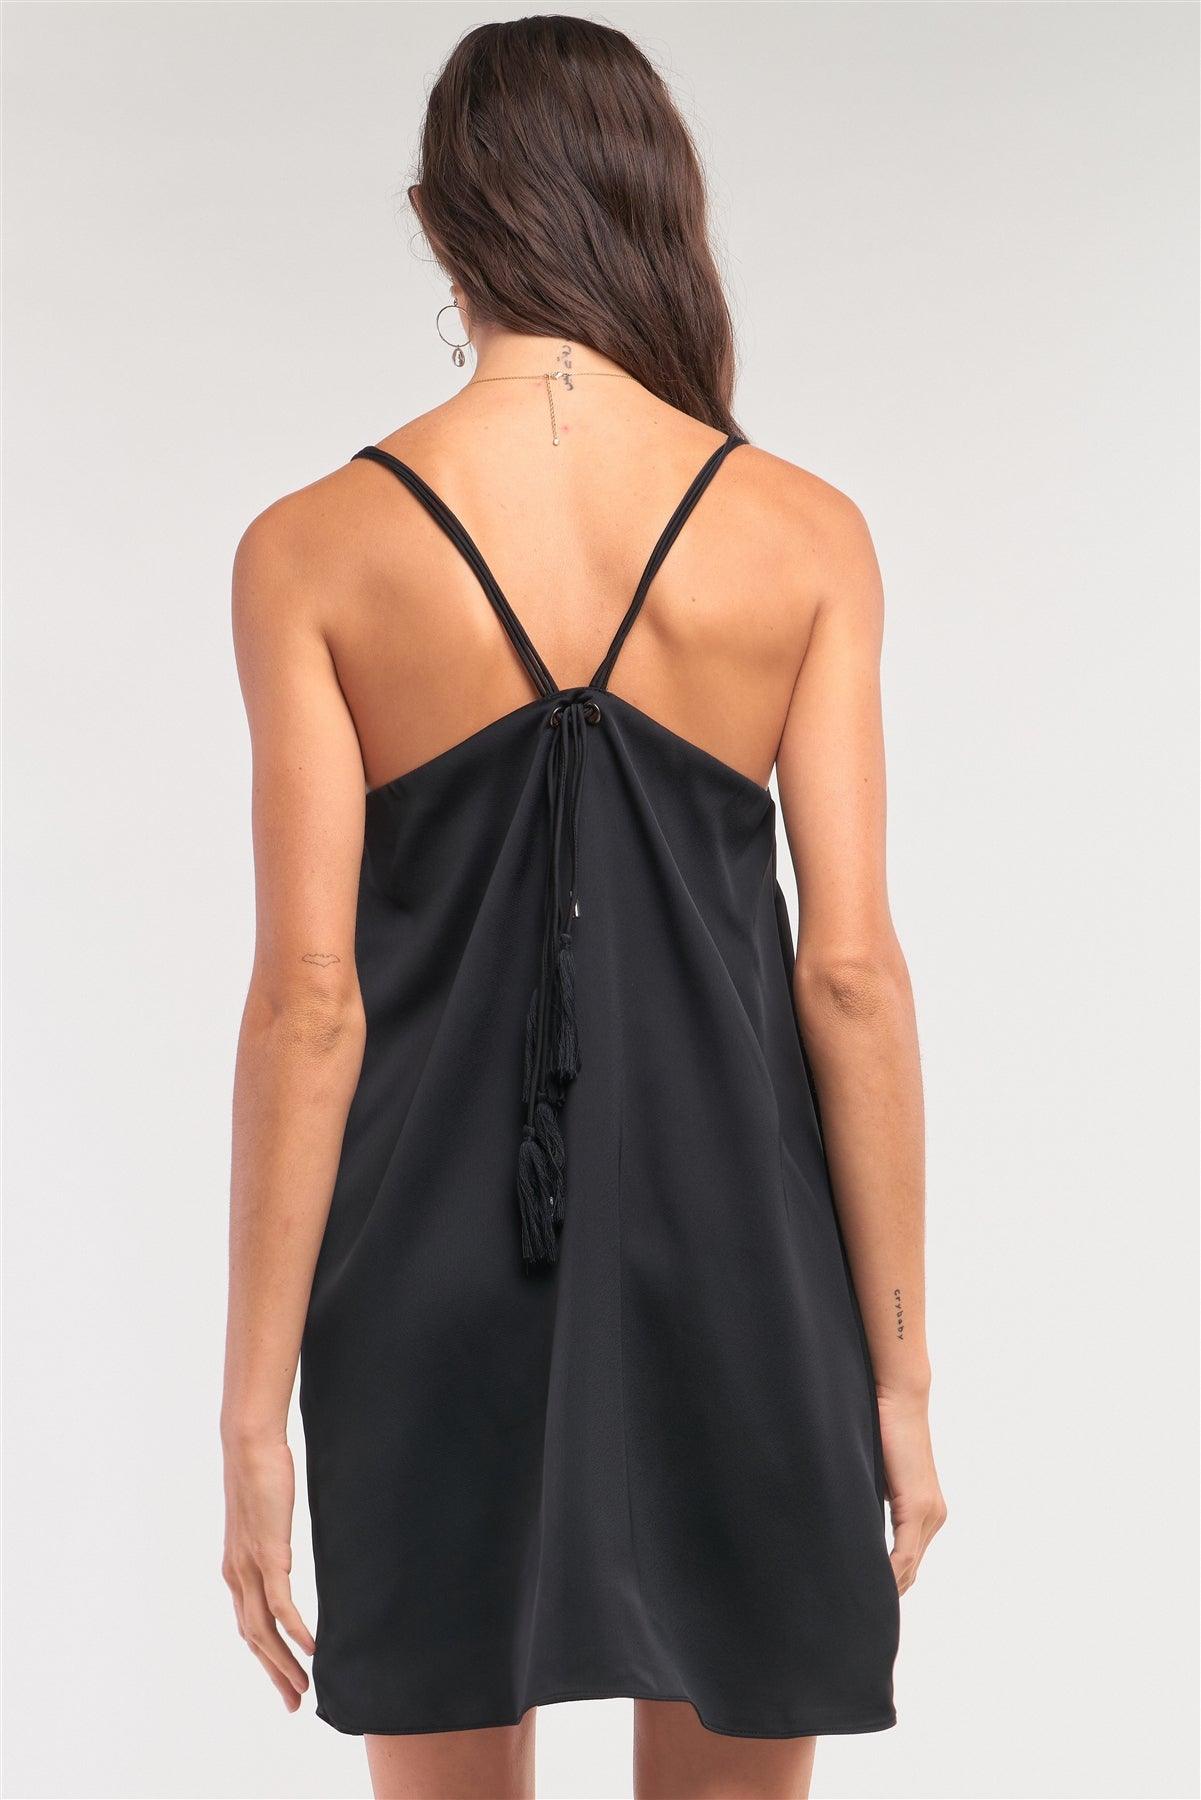 Black Satin V-Neck Loose Fit Sleeveless Razor Back Self-Tie Tassel Tip Straps Detail Mini Dress /1-2-2-1